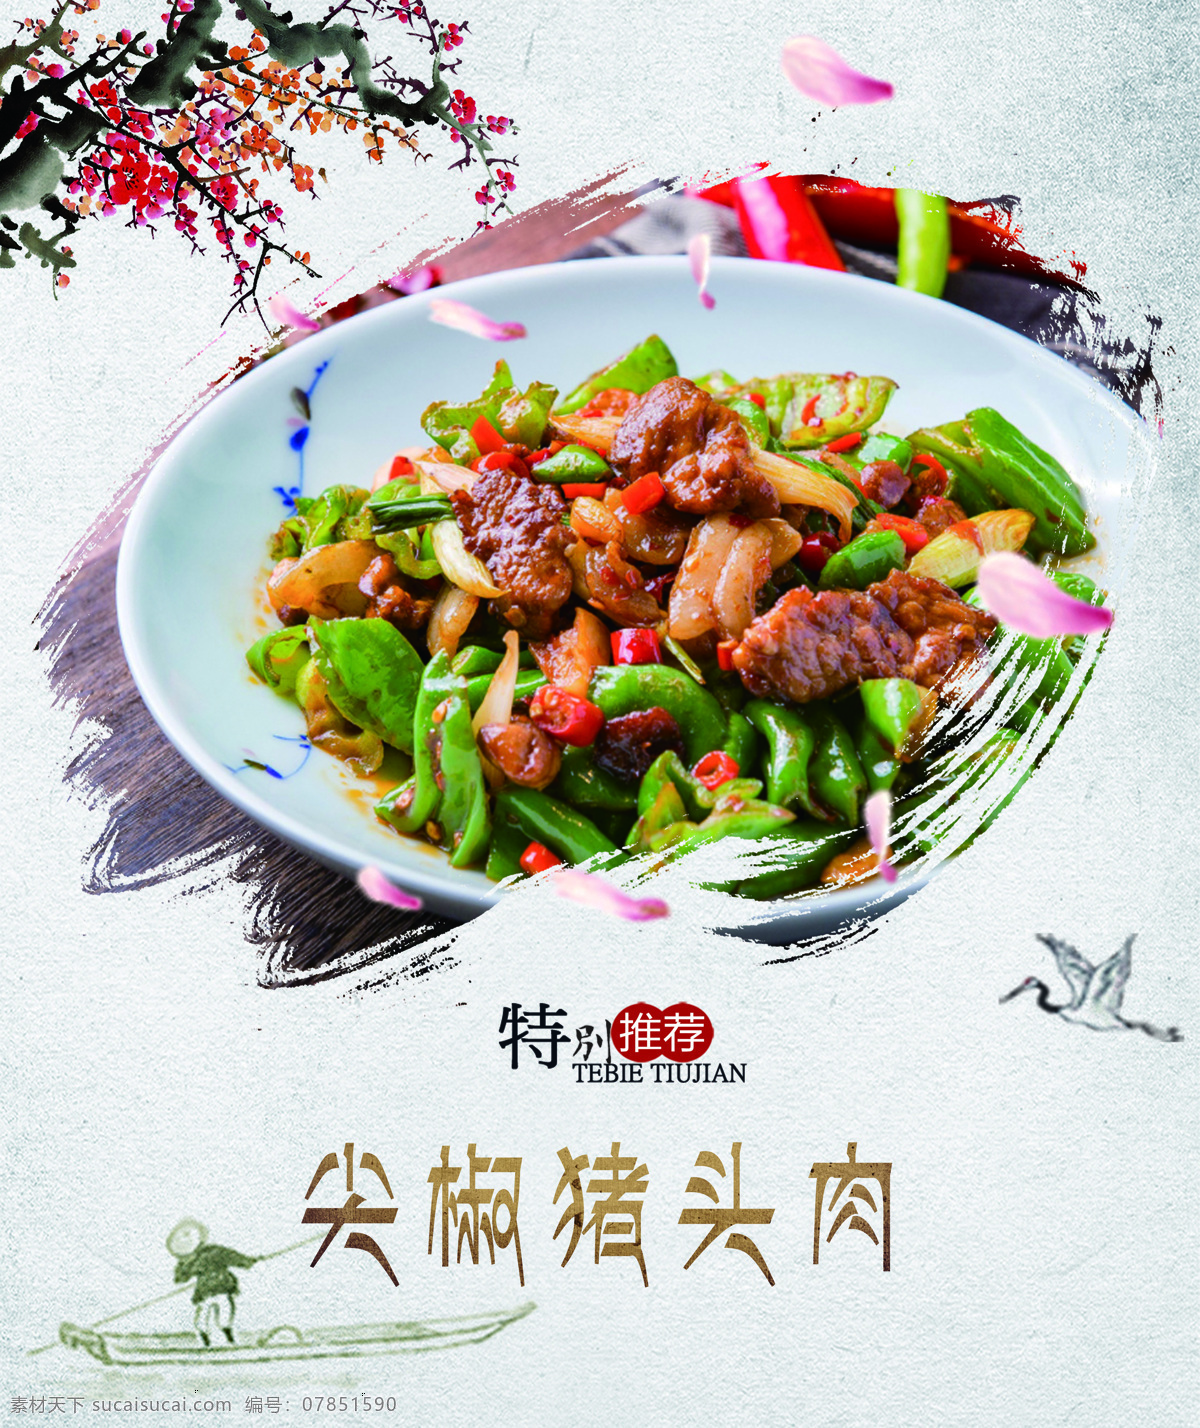 尖椒猪头肉 食堂灯箱 菜品 水墨风 中国风 室外广告设计